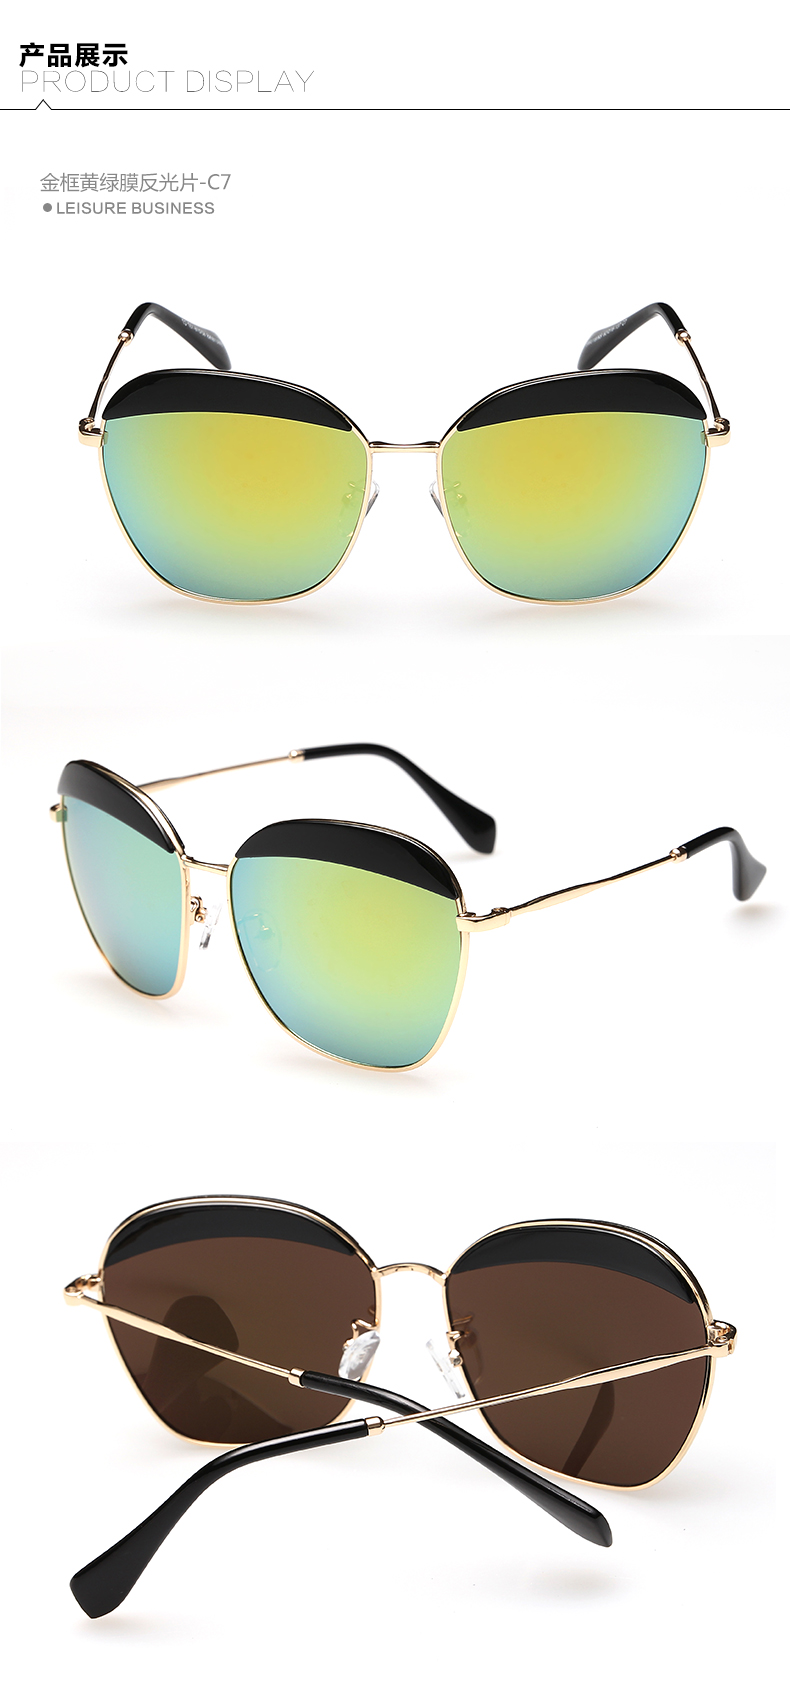 新款太阳镜 男女款时尚大框个性墨镜 防紫外线太阳眼镜SG15016